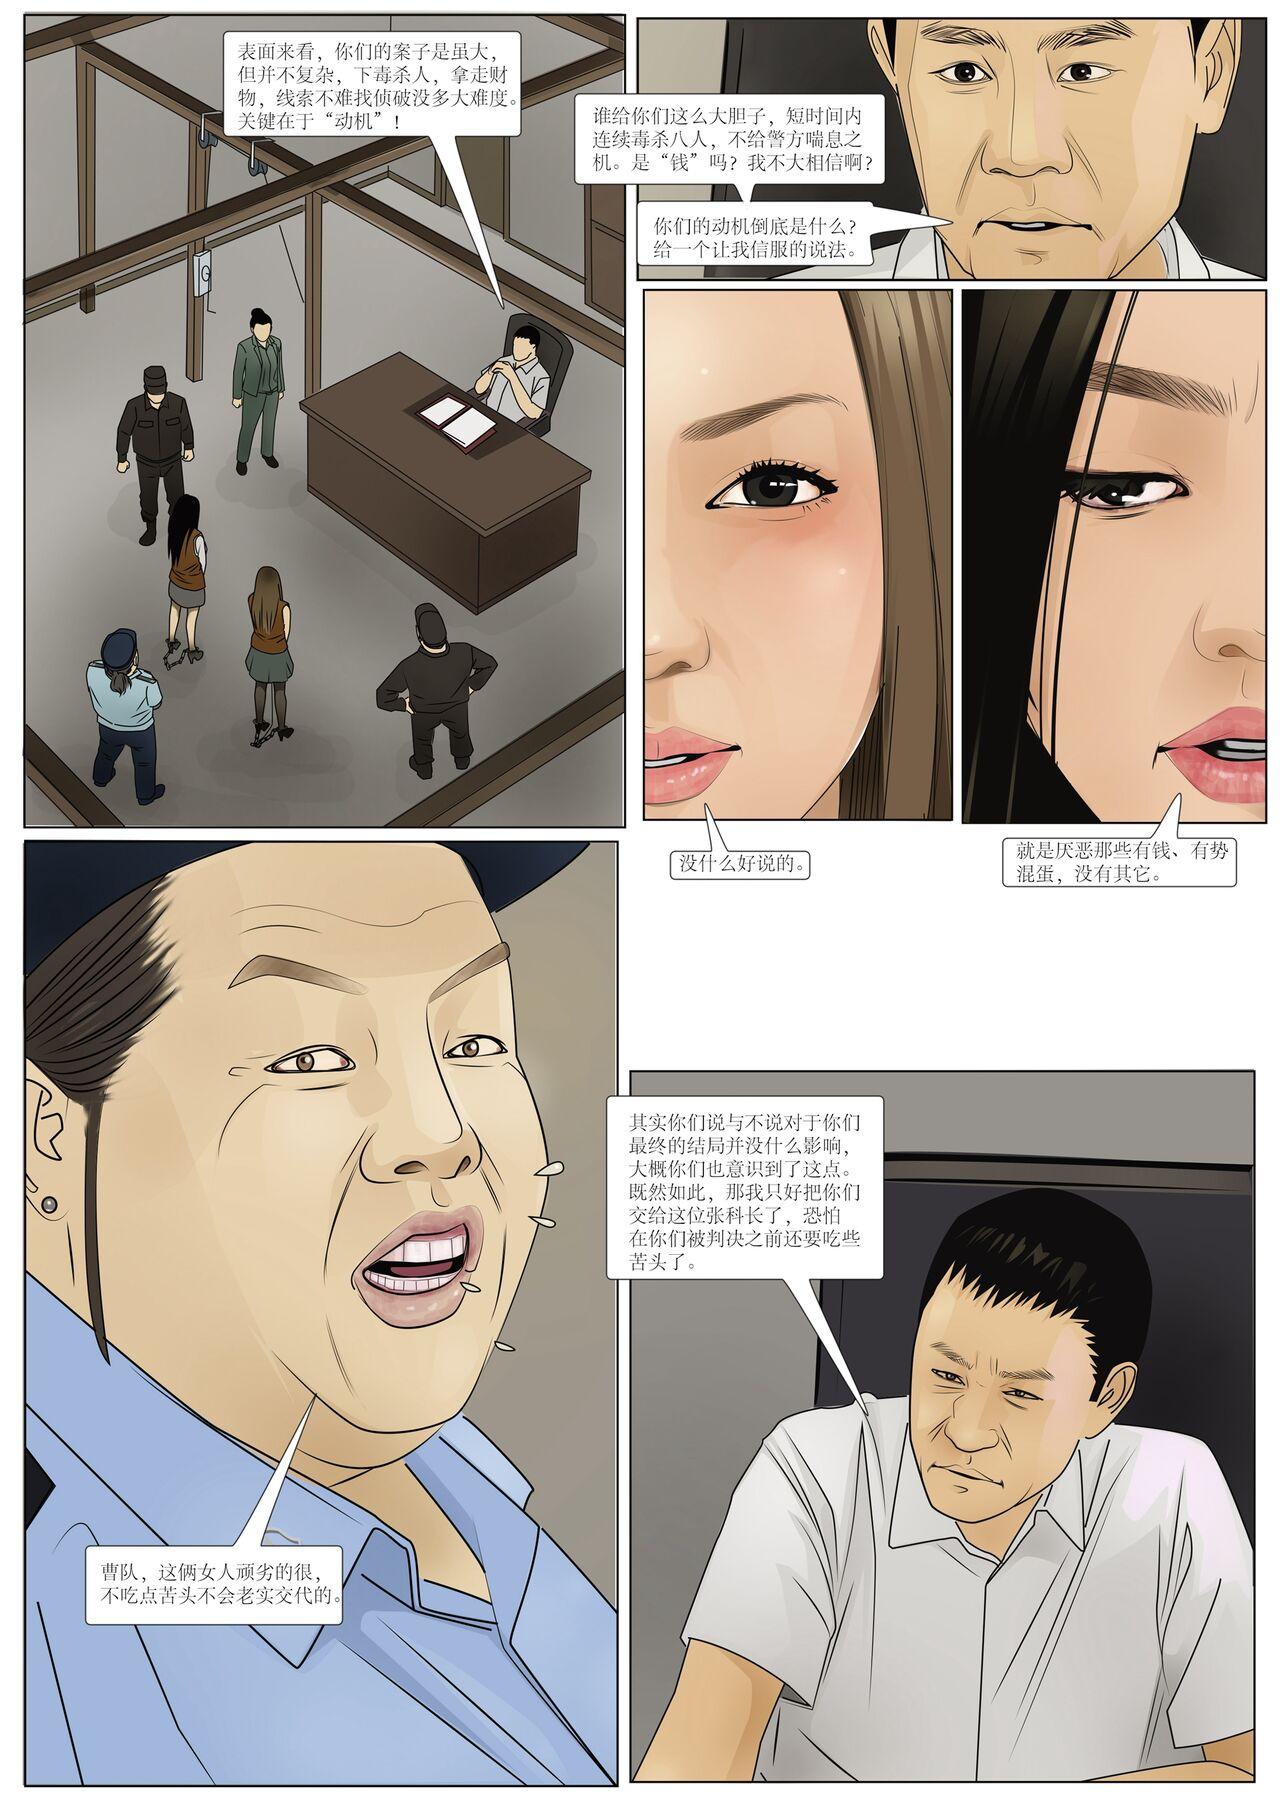 Behind 枫语漫画 Foryou 《极度重犯》第六话 Three Female Prisoners 6 Chinese Hot Girl - Page 4